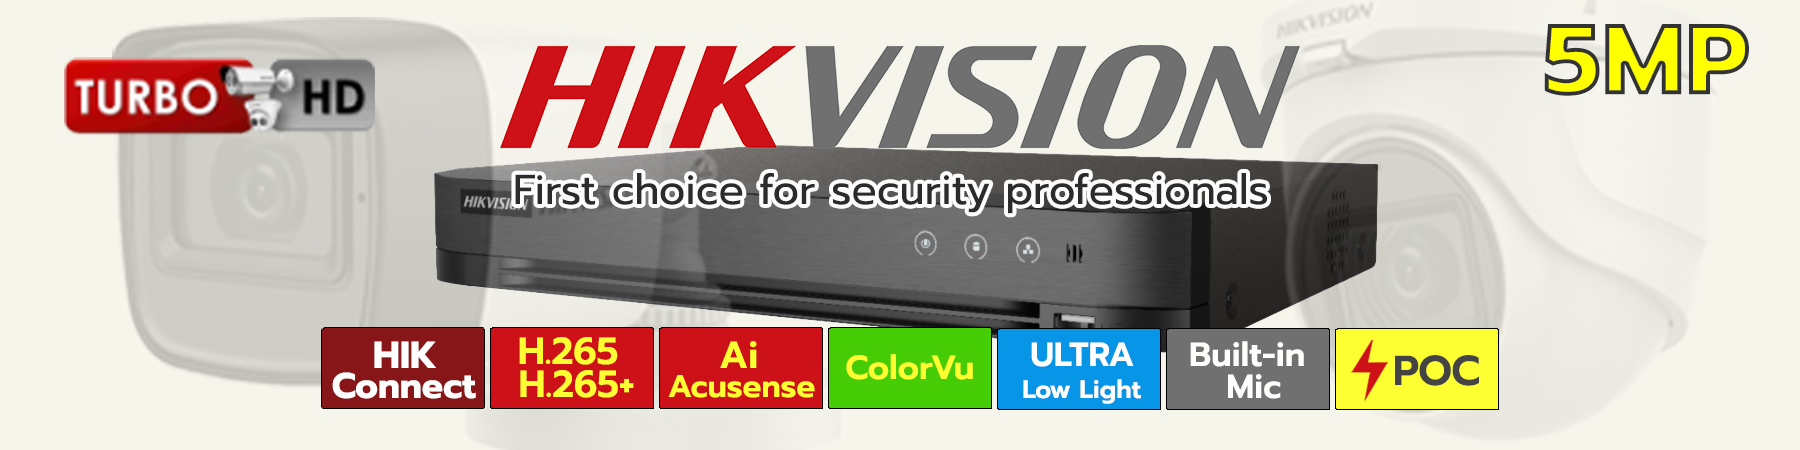 ชุดกล้อง Hikvision 5MP, ชุดกล้อง Hikvision ไมค์ในตัว, ชุดกล้อง Hikvision ColorVu 5MP, ชุดกล้อง Hikvision Ultra Low Light 5MP, ชุดกล้อง Hikvision อินฟาเรด